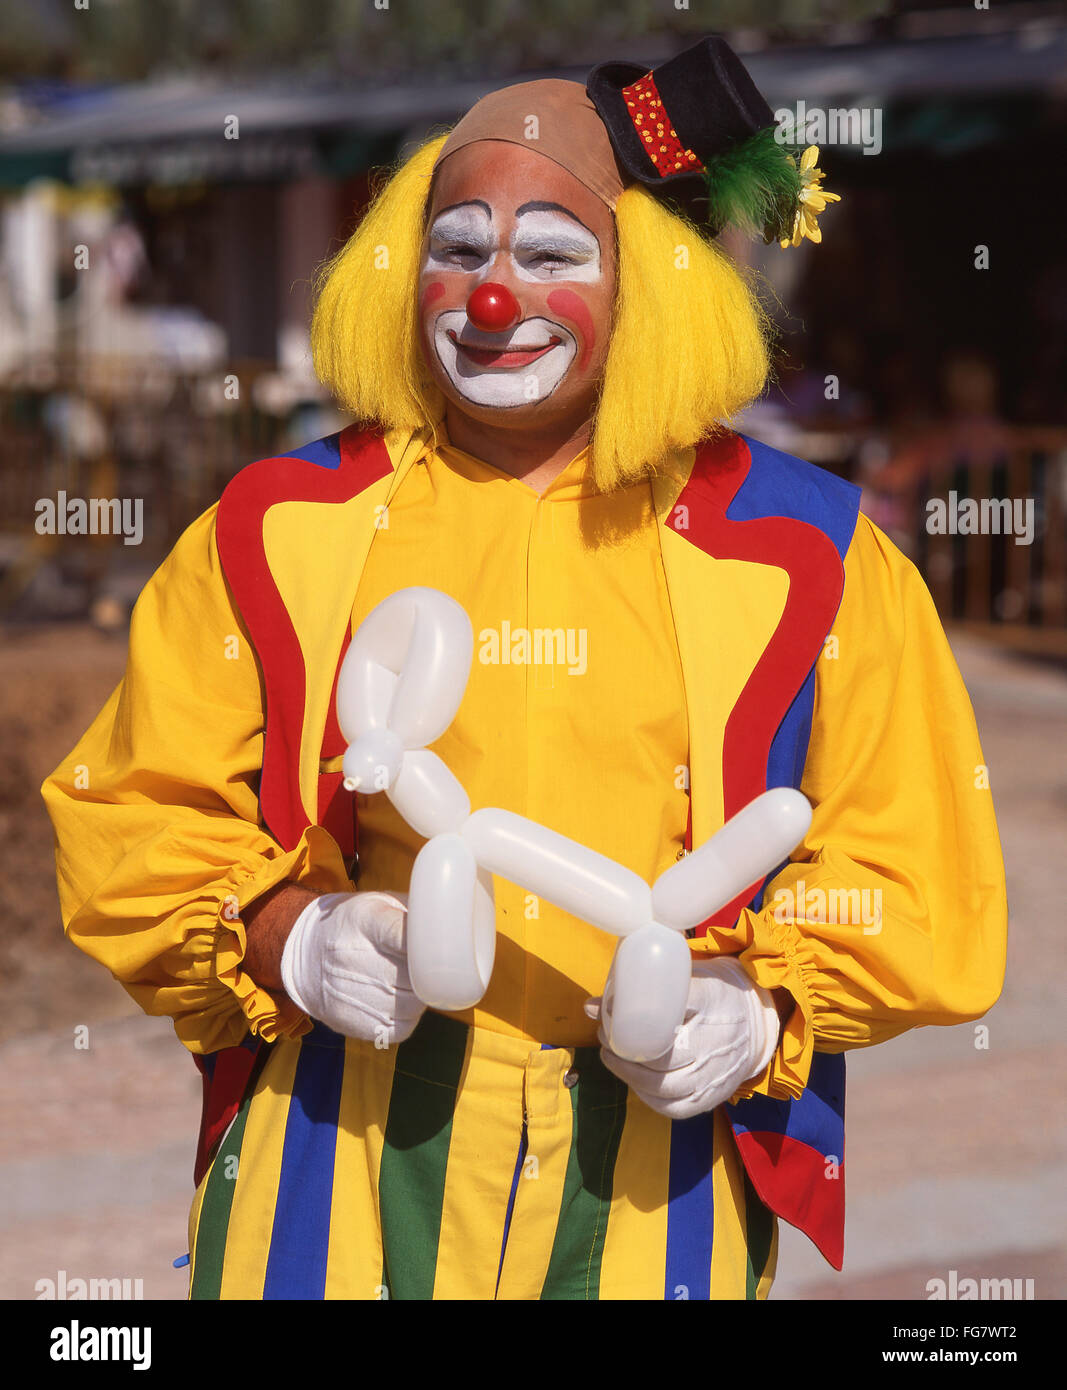 Clown coloré modélisé holding balloon, Berkshire, Angleterre, Royaume-Uni Banque D'Images